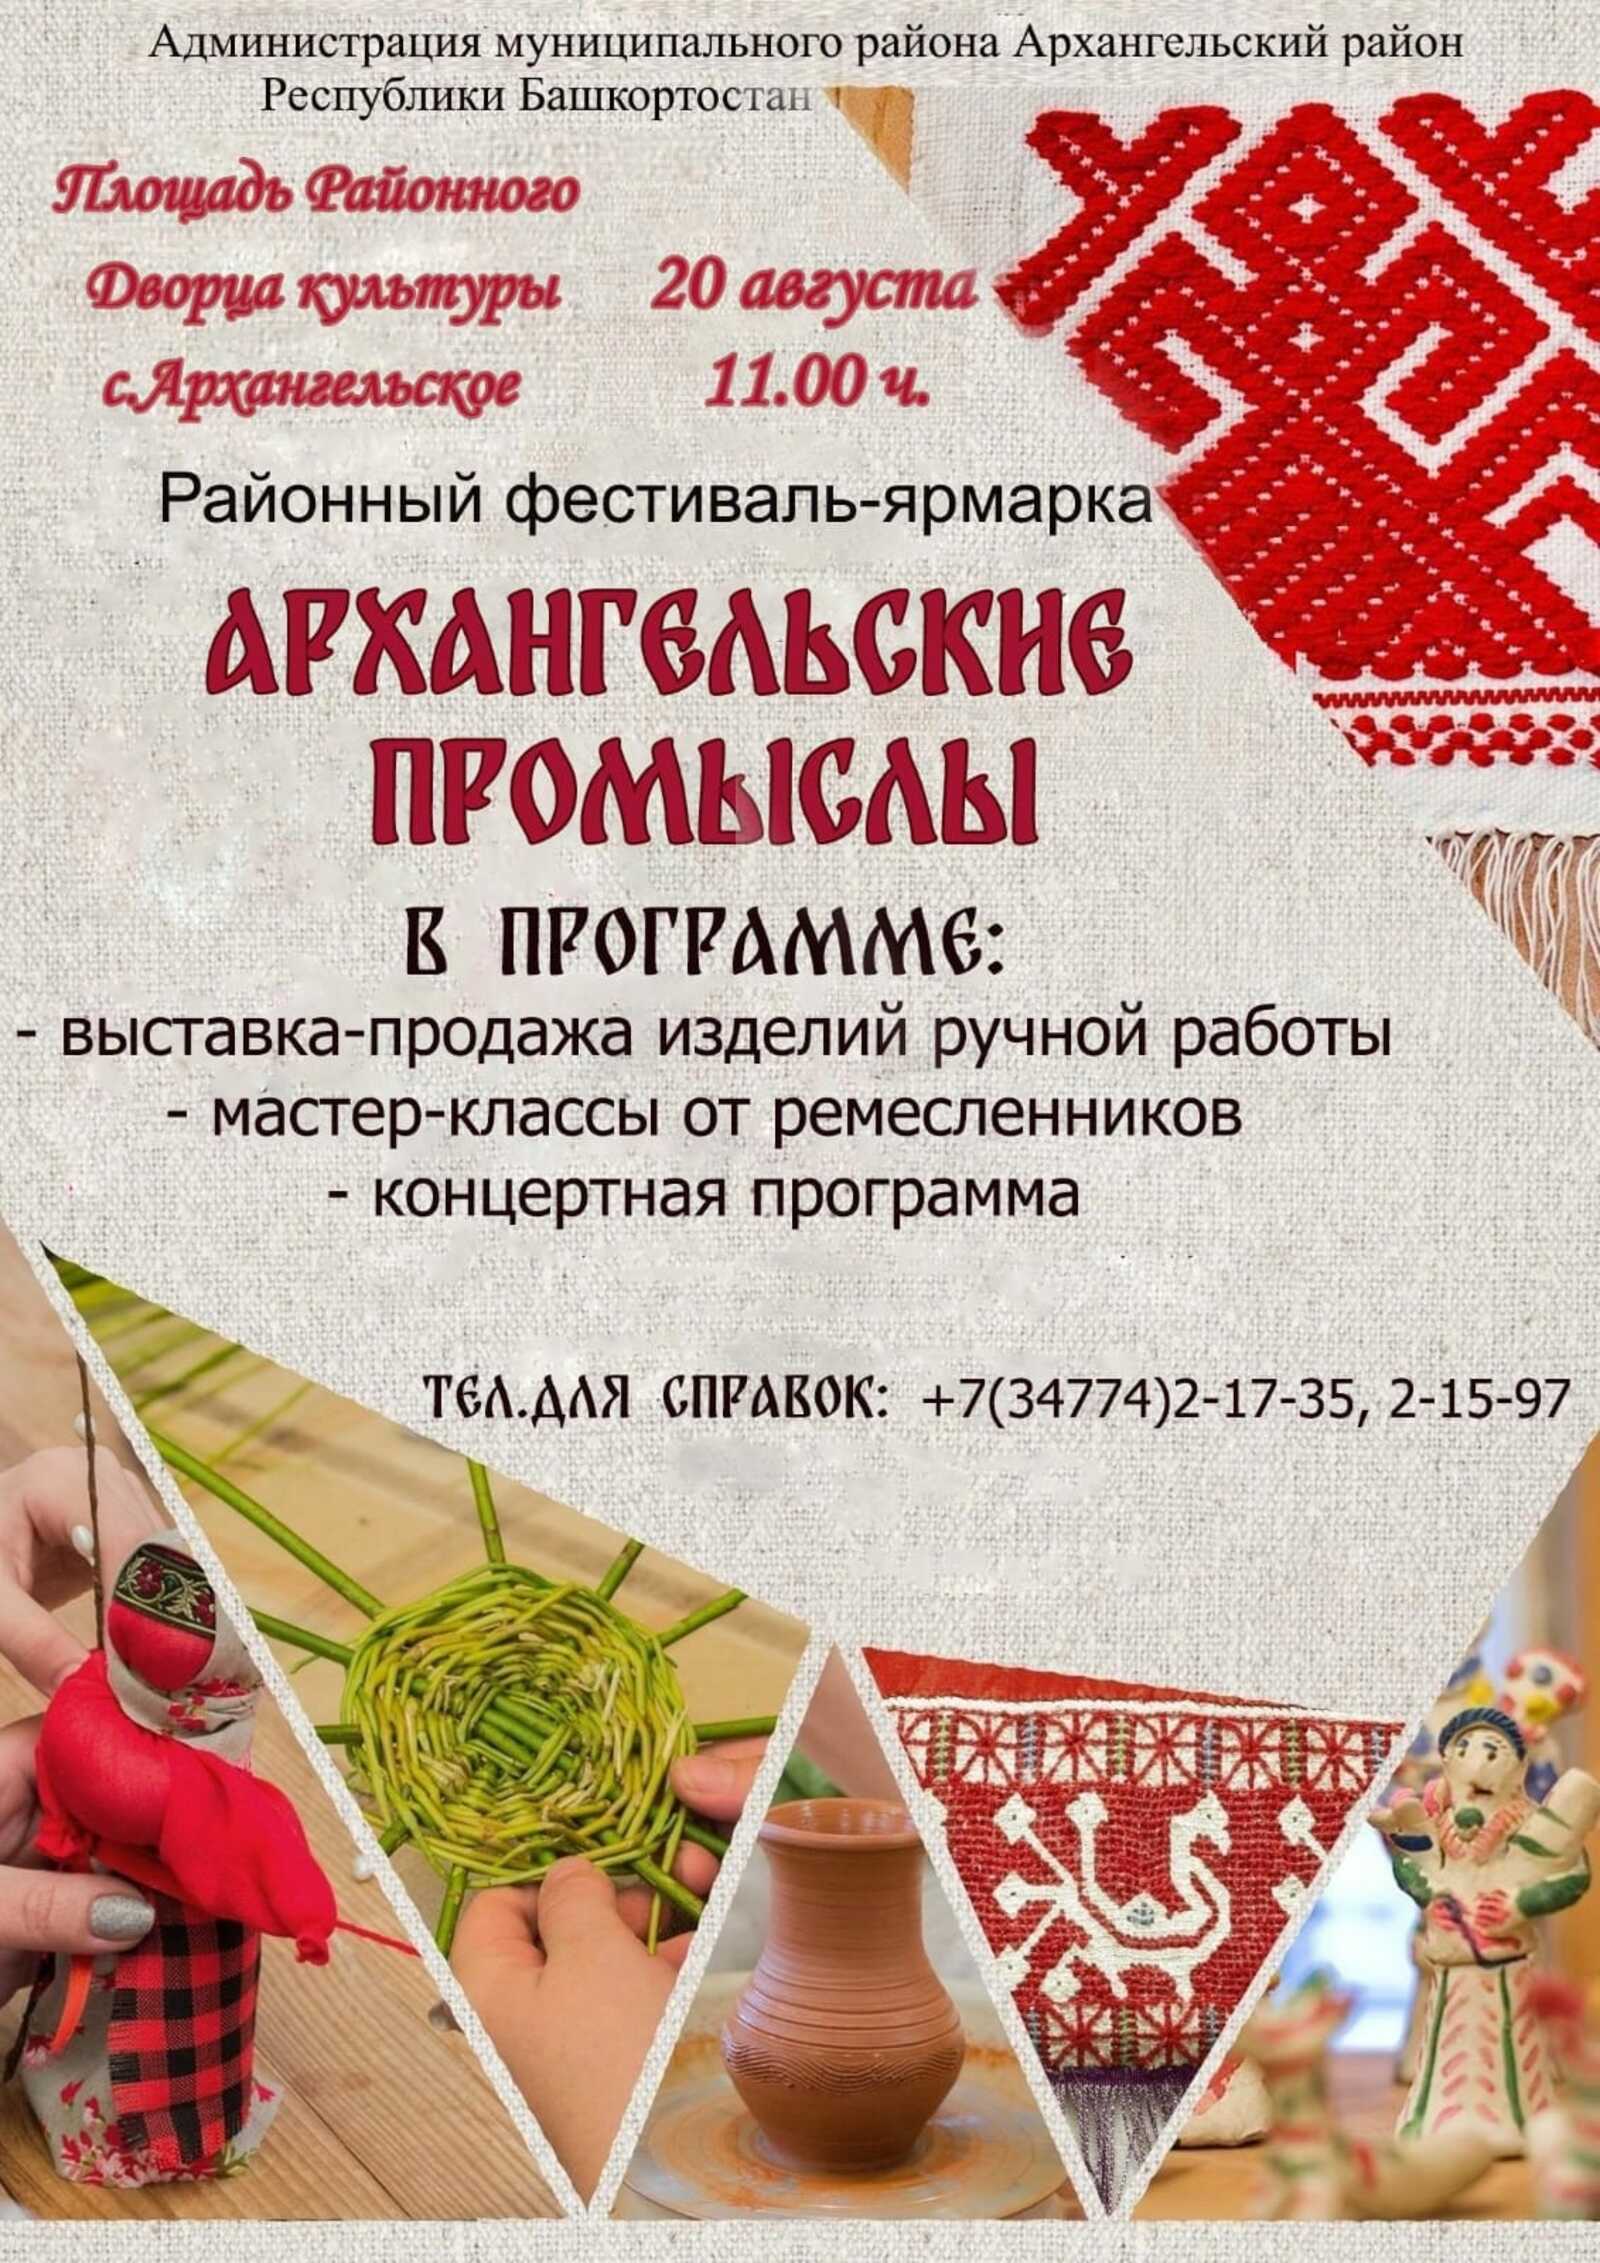 И развернет шатры фестиваль-ярмарка «Архангельские промыслы»!